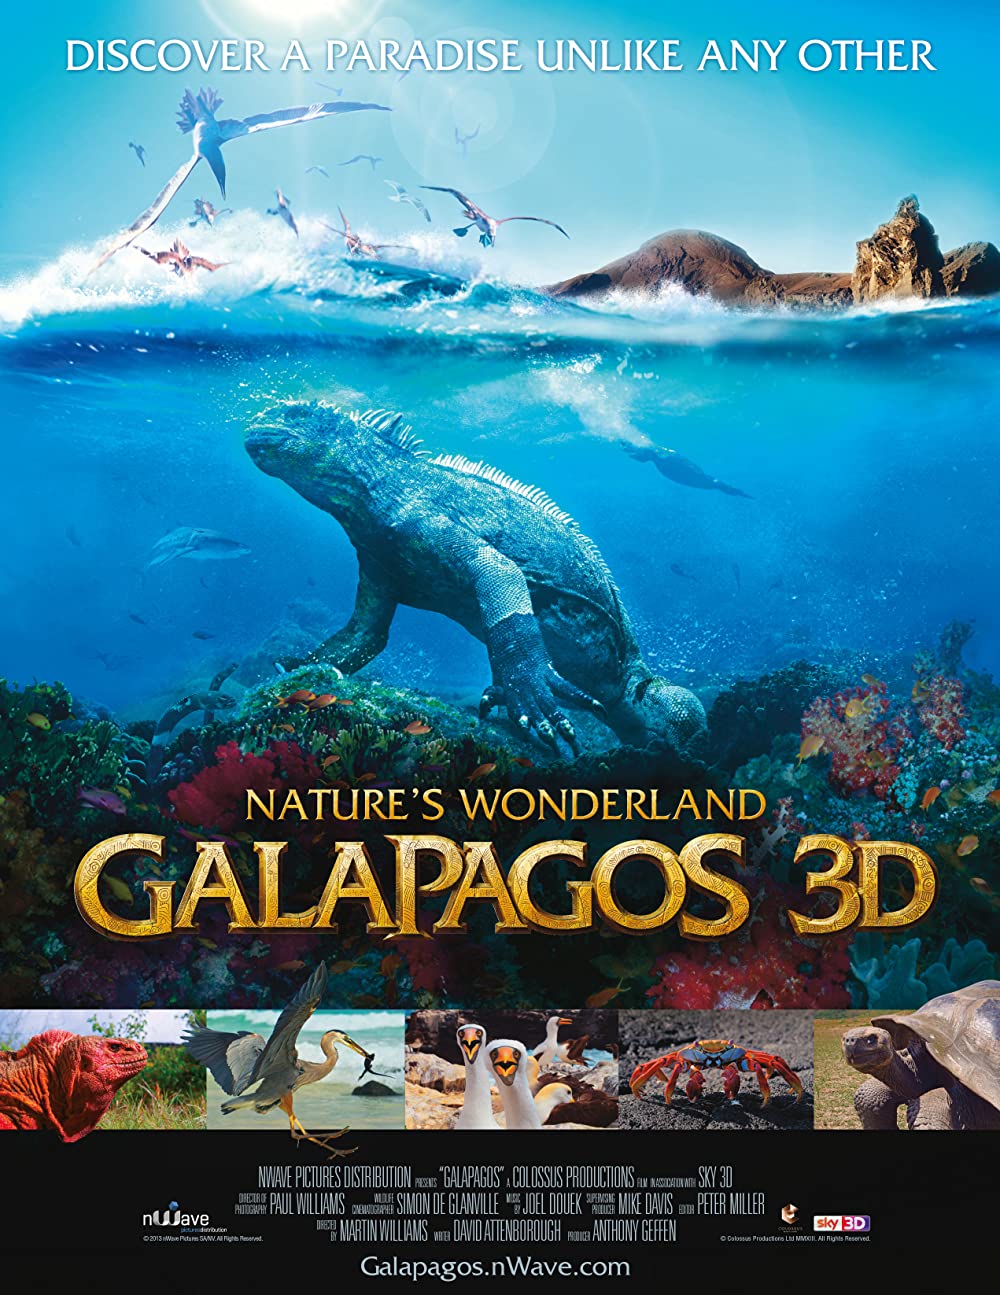 Filmbeschreibung zu Galapagos - Wunderland der Natur